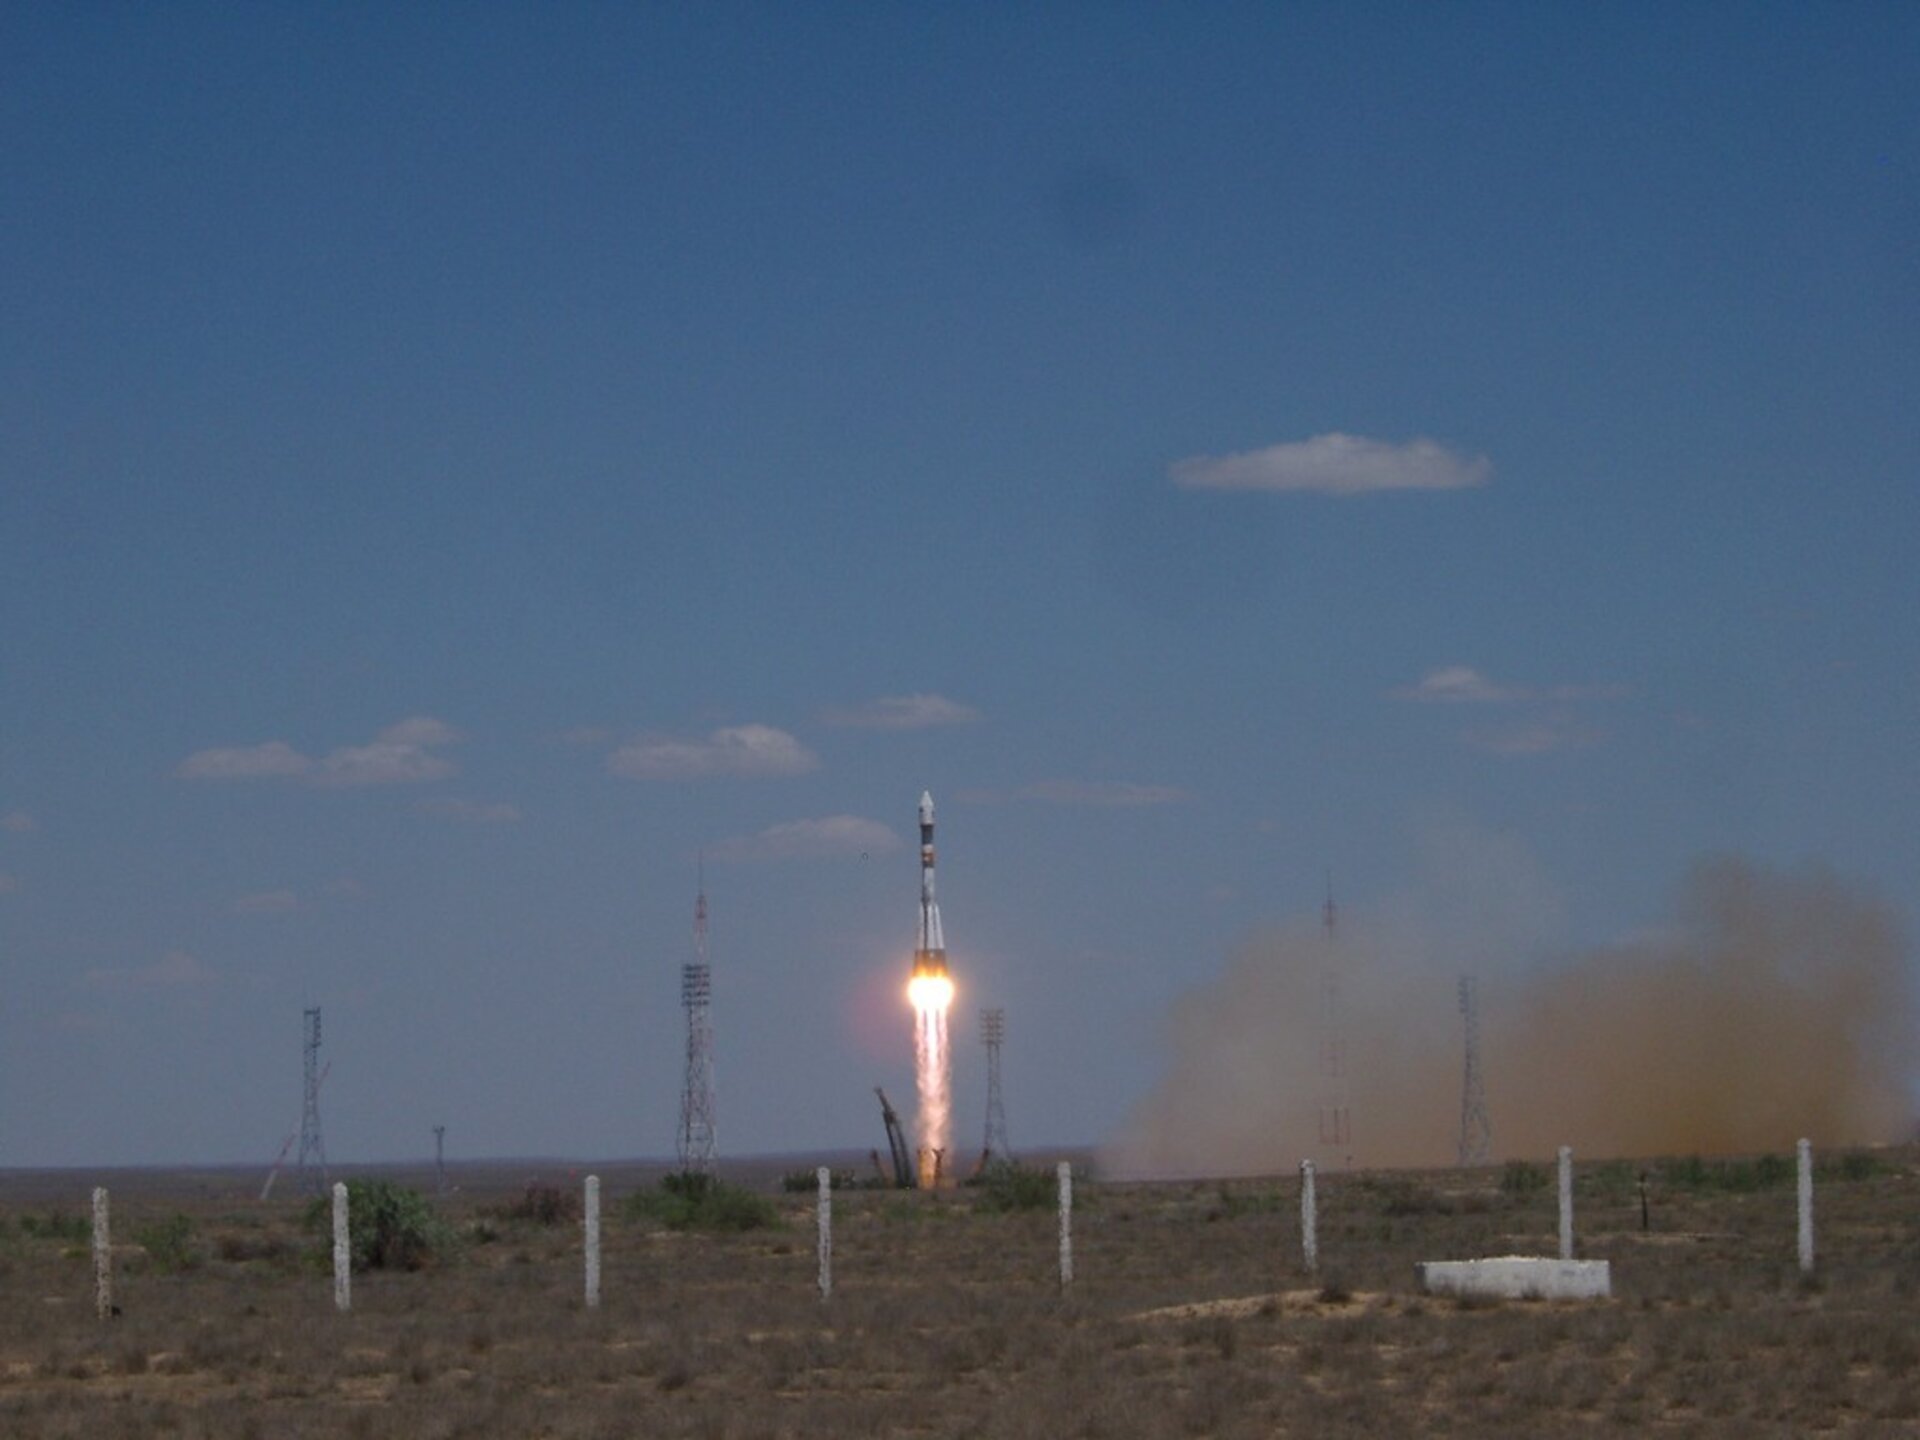 PAMELA lyfte från kosmodromen i Baikonur 15 juni 2006 som passagerare på den ryska jordobservationssatelliten Resurs-DK1.